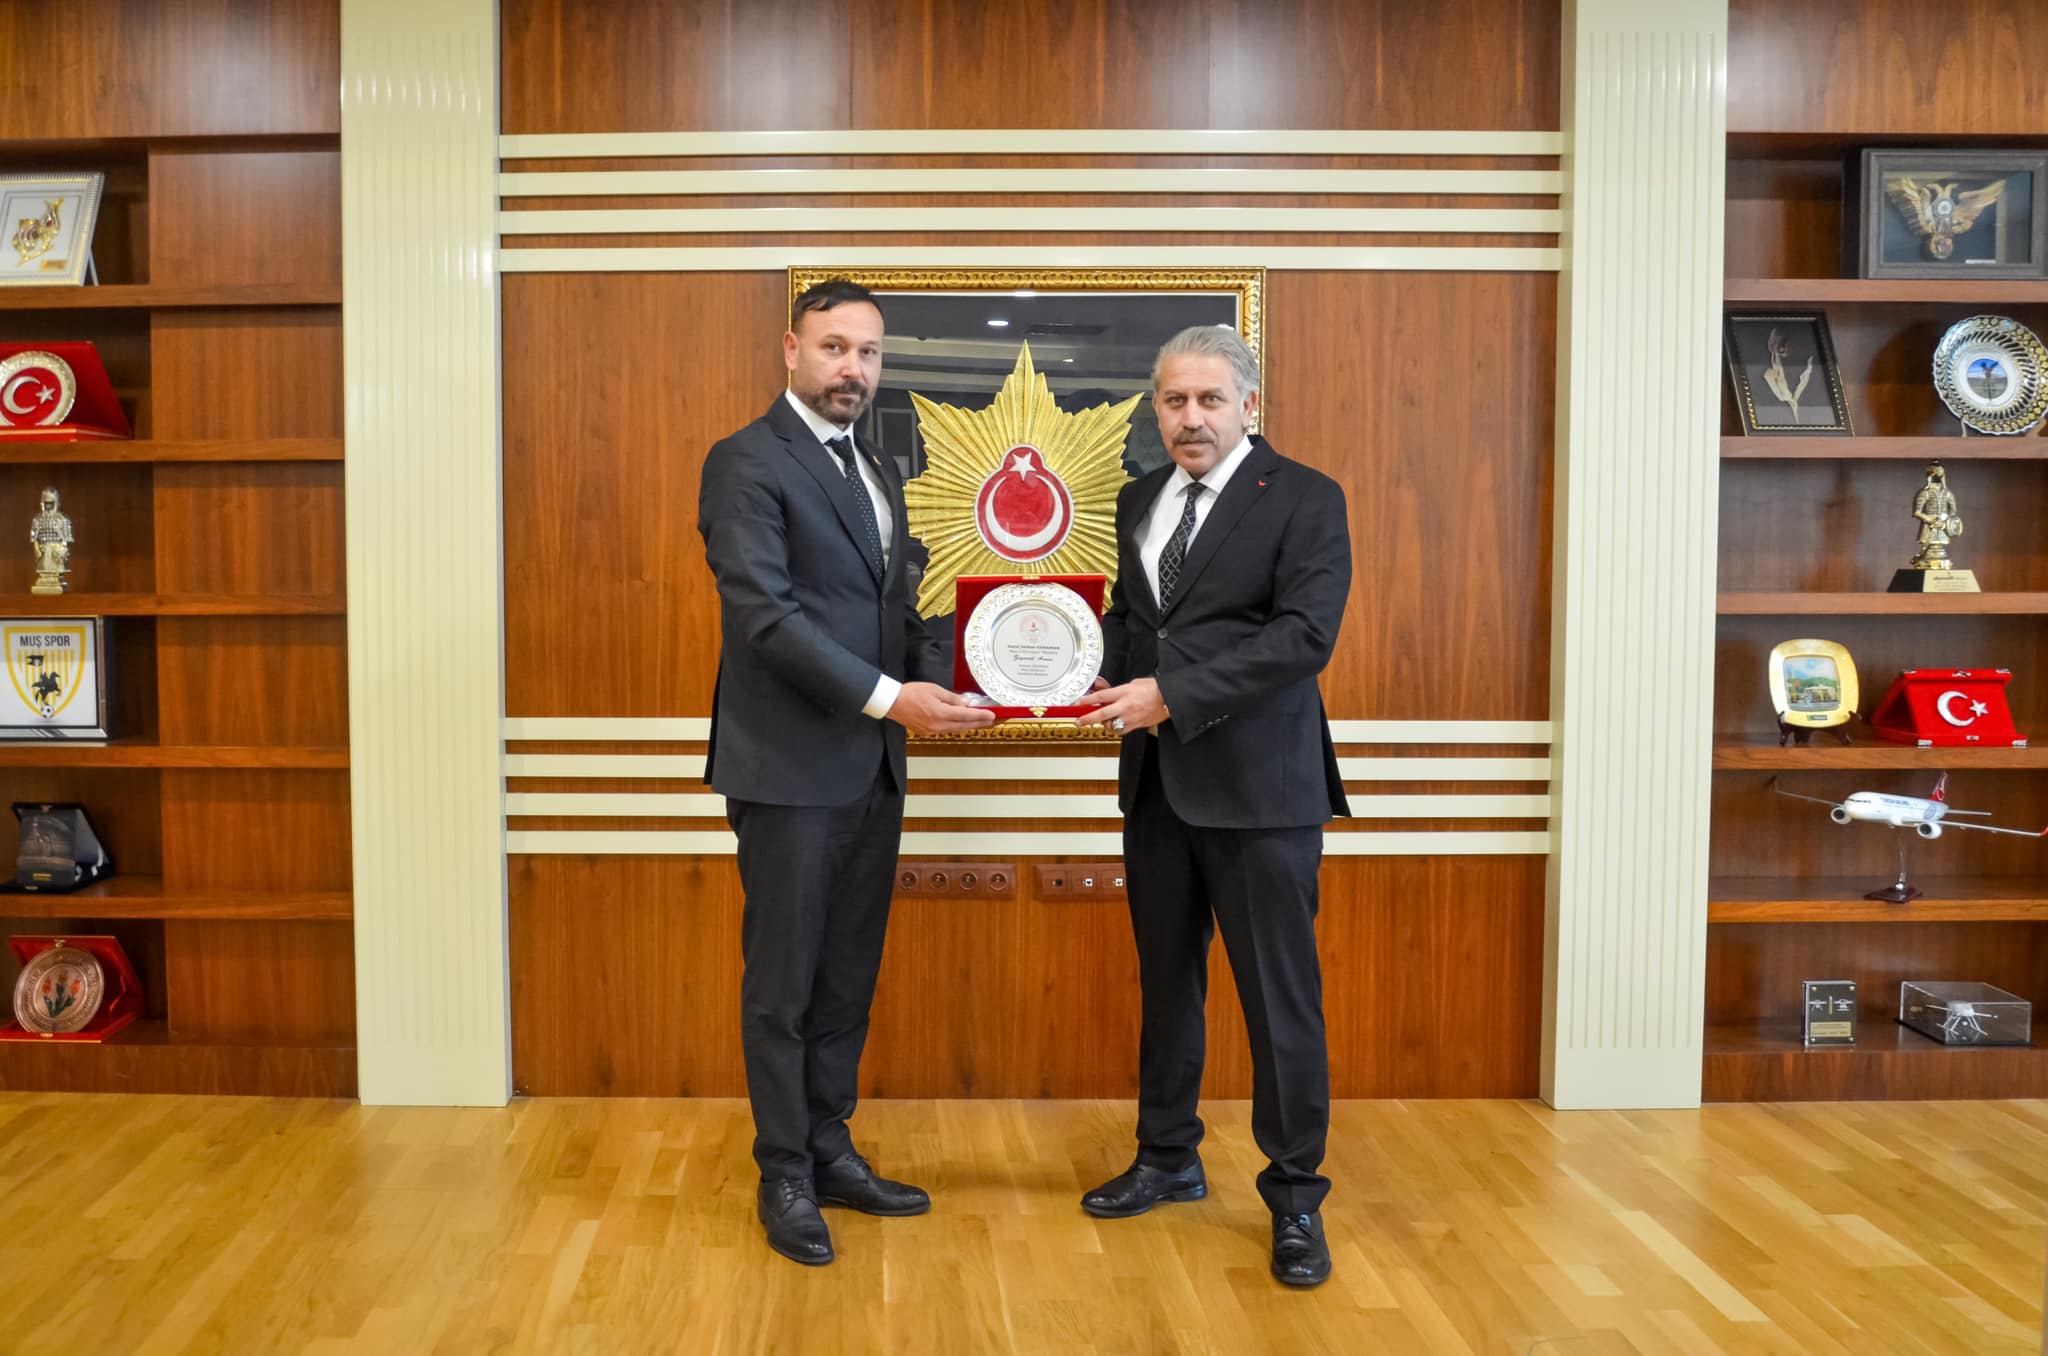 Hasköy İlçe Belediye Başkanı Rıdvan Sezigen, Yeni Emniyet Müdürü Serkan Karaman'ı Ziyaret Etti